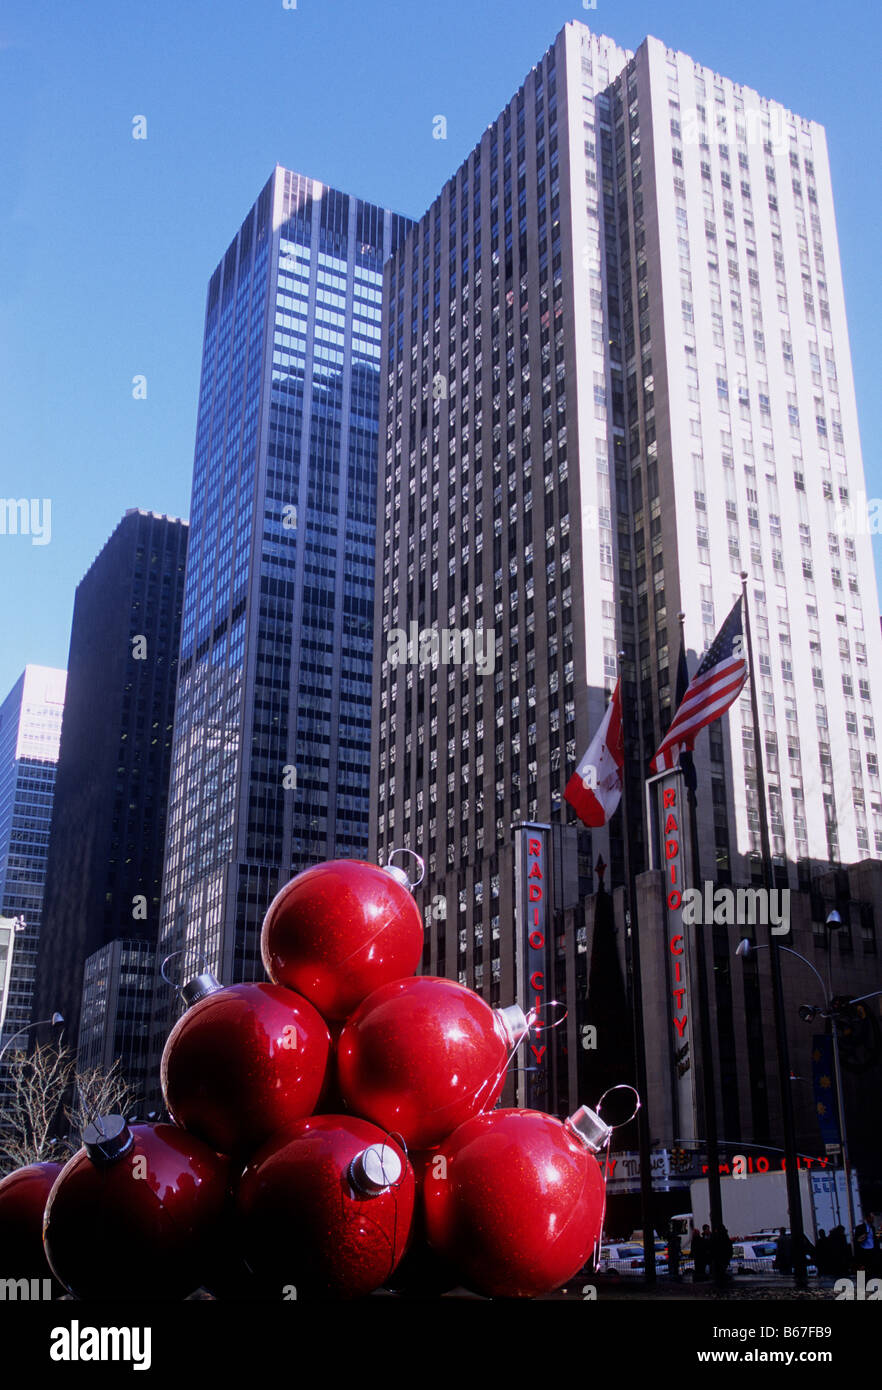 Gratte-ciels sur la Sixième Avenue, (Avenue des Amériques) New York City. Radio City Music Hall. Décorations de Noël rouges géantes dans la rue. ÉTATS-UNIS Banque D'Images